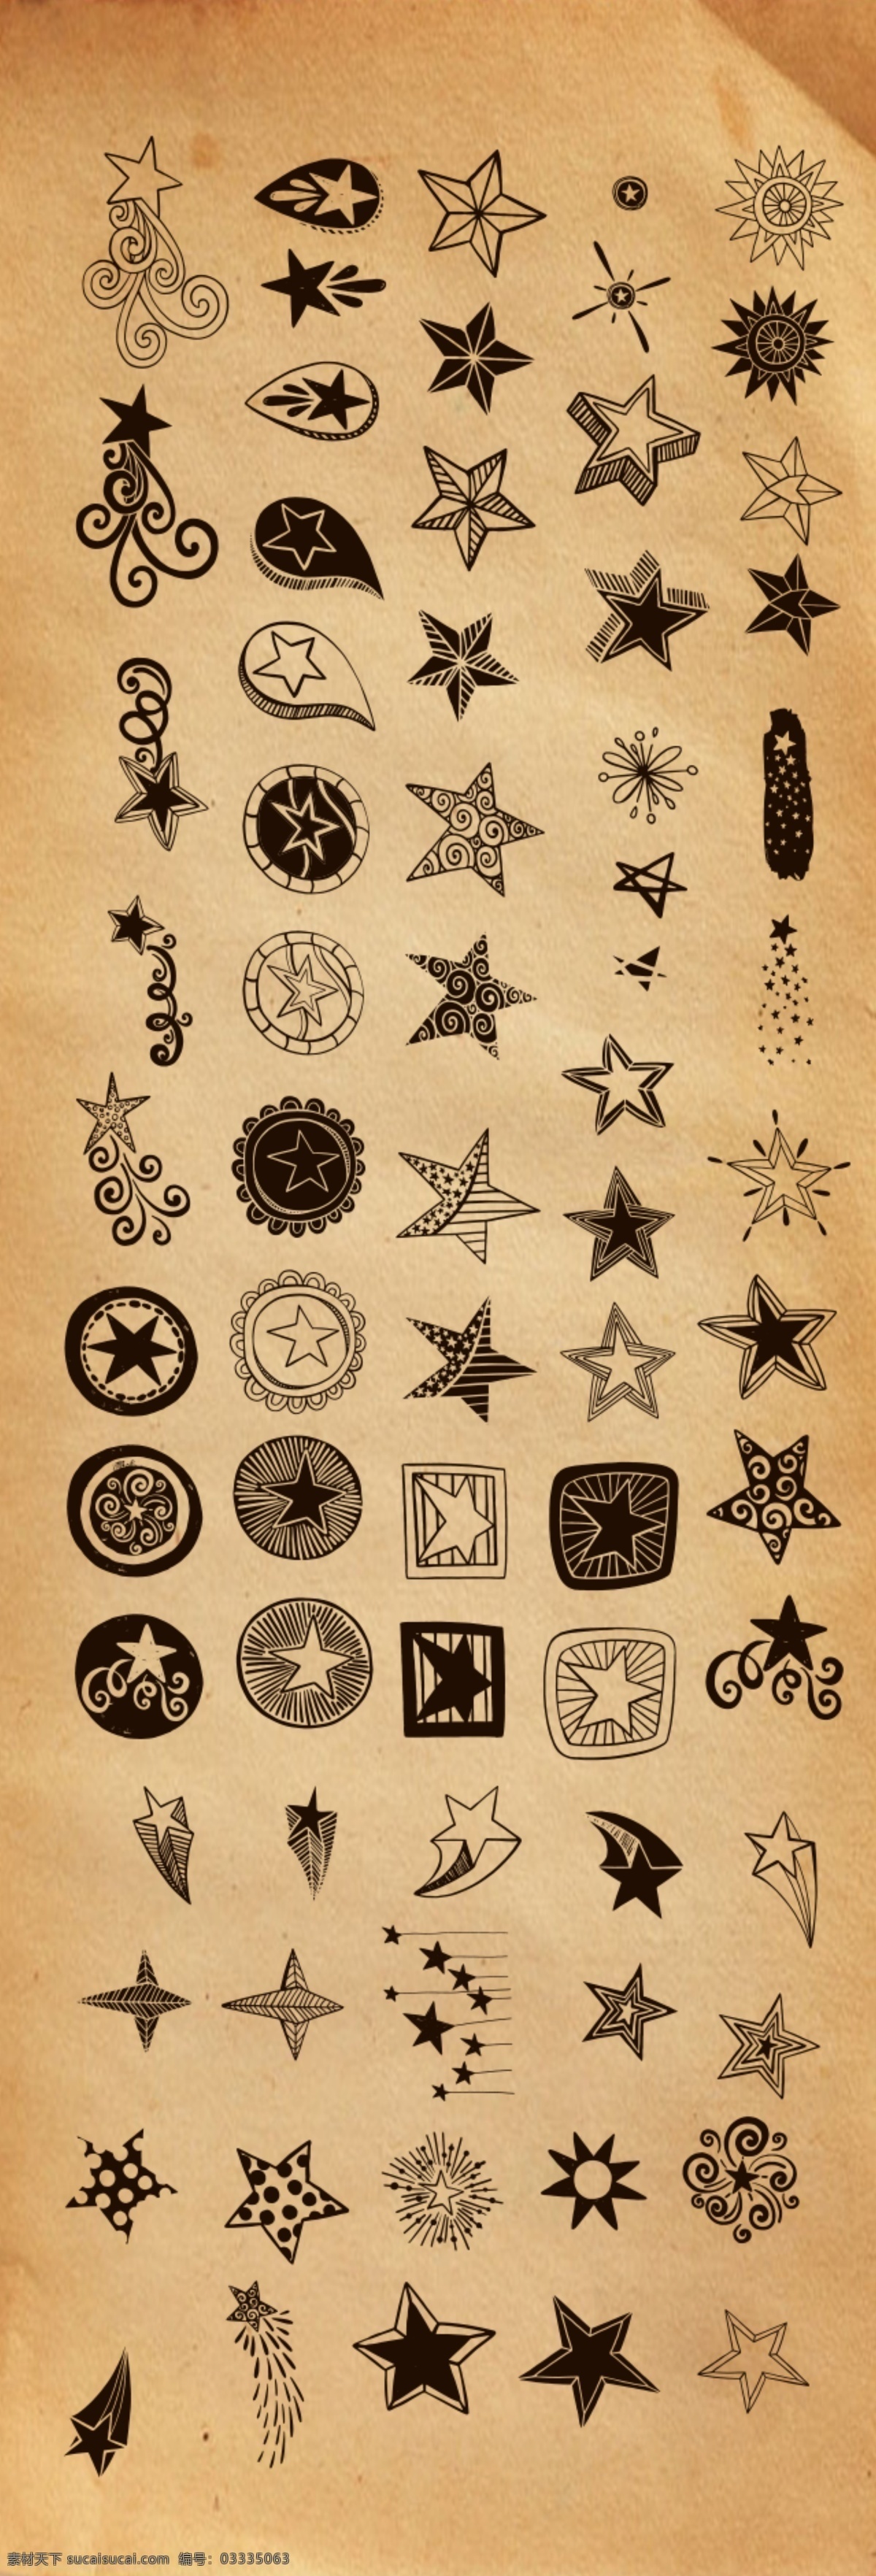 星星涂鸦图案 星星 涂鸦 图案 剪影 面具 牛皮纸 纸 复古 仿古 创意星星 星星画 矢量图素材 标志图标 其他图标